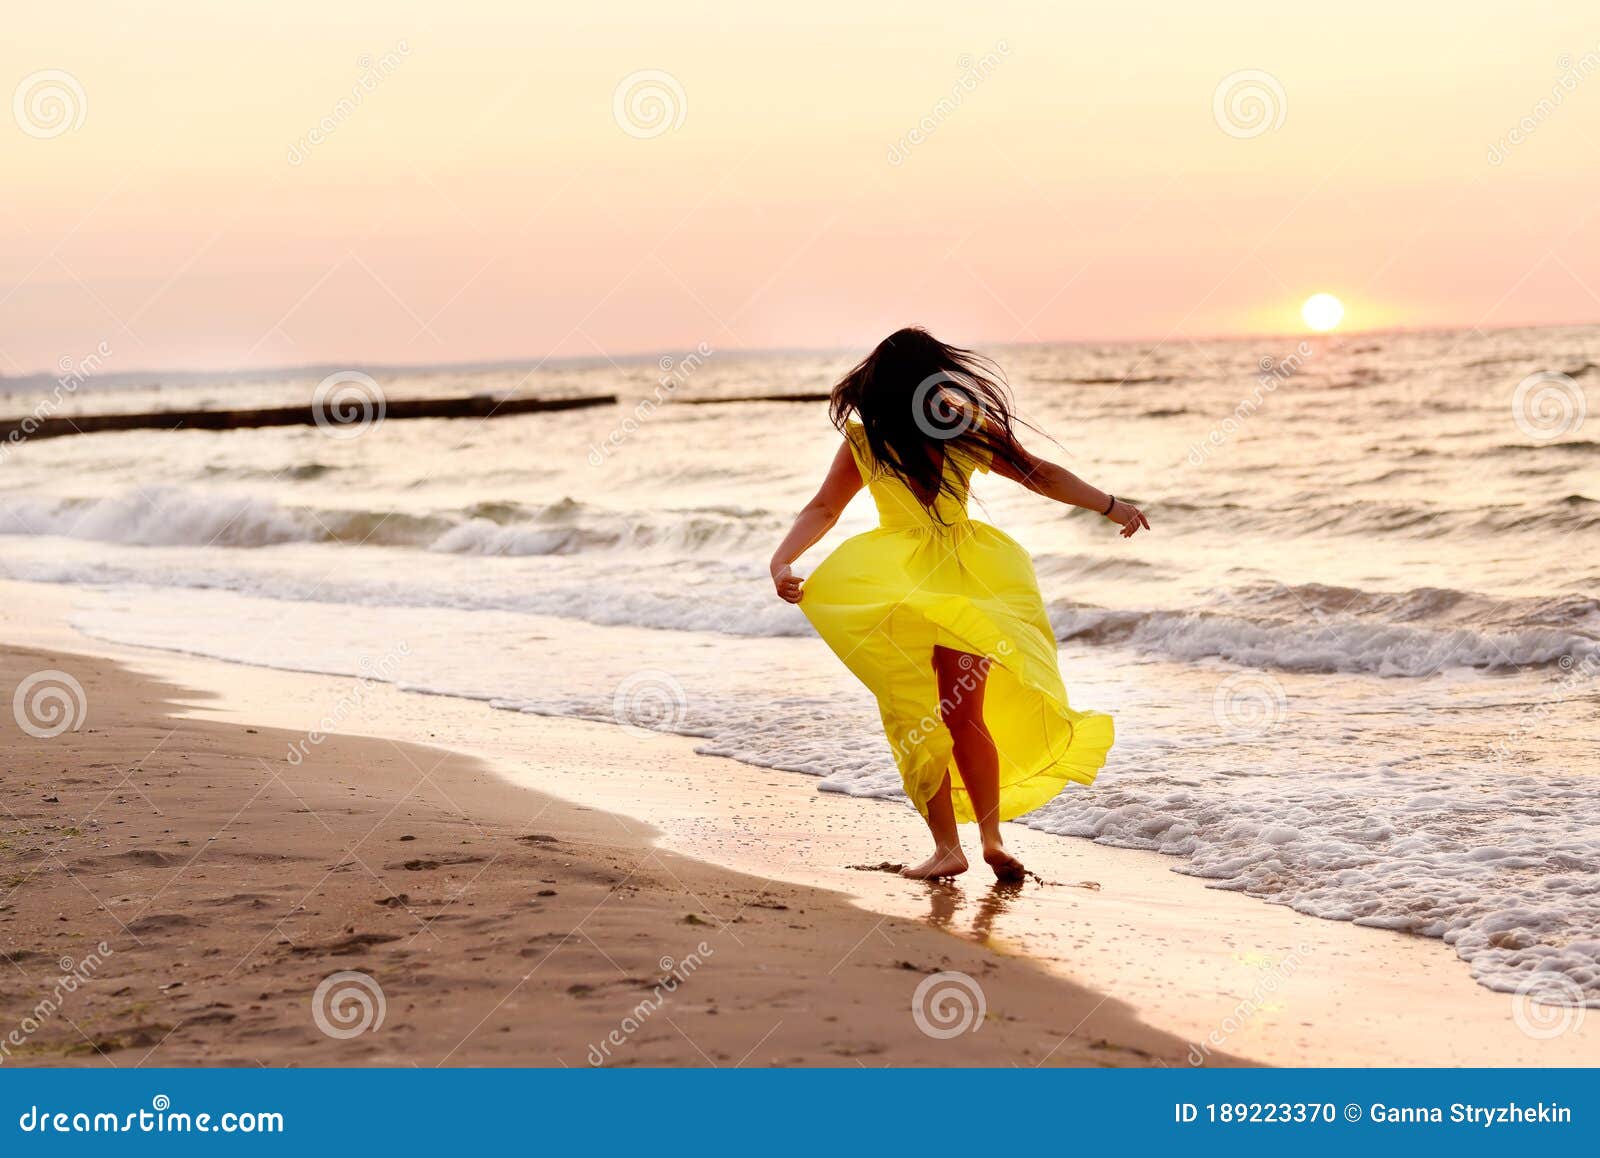 Фото Девушки На Рассвете На Море